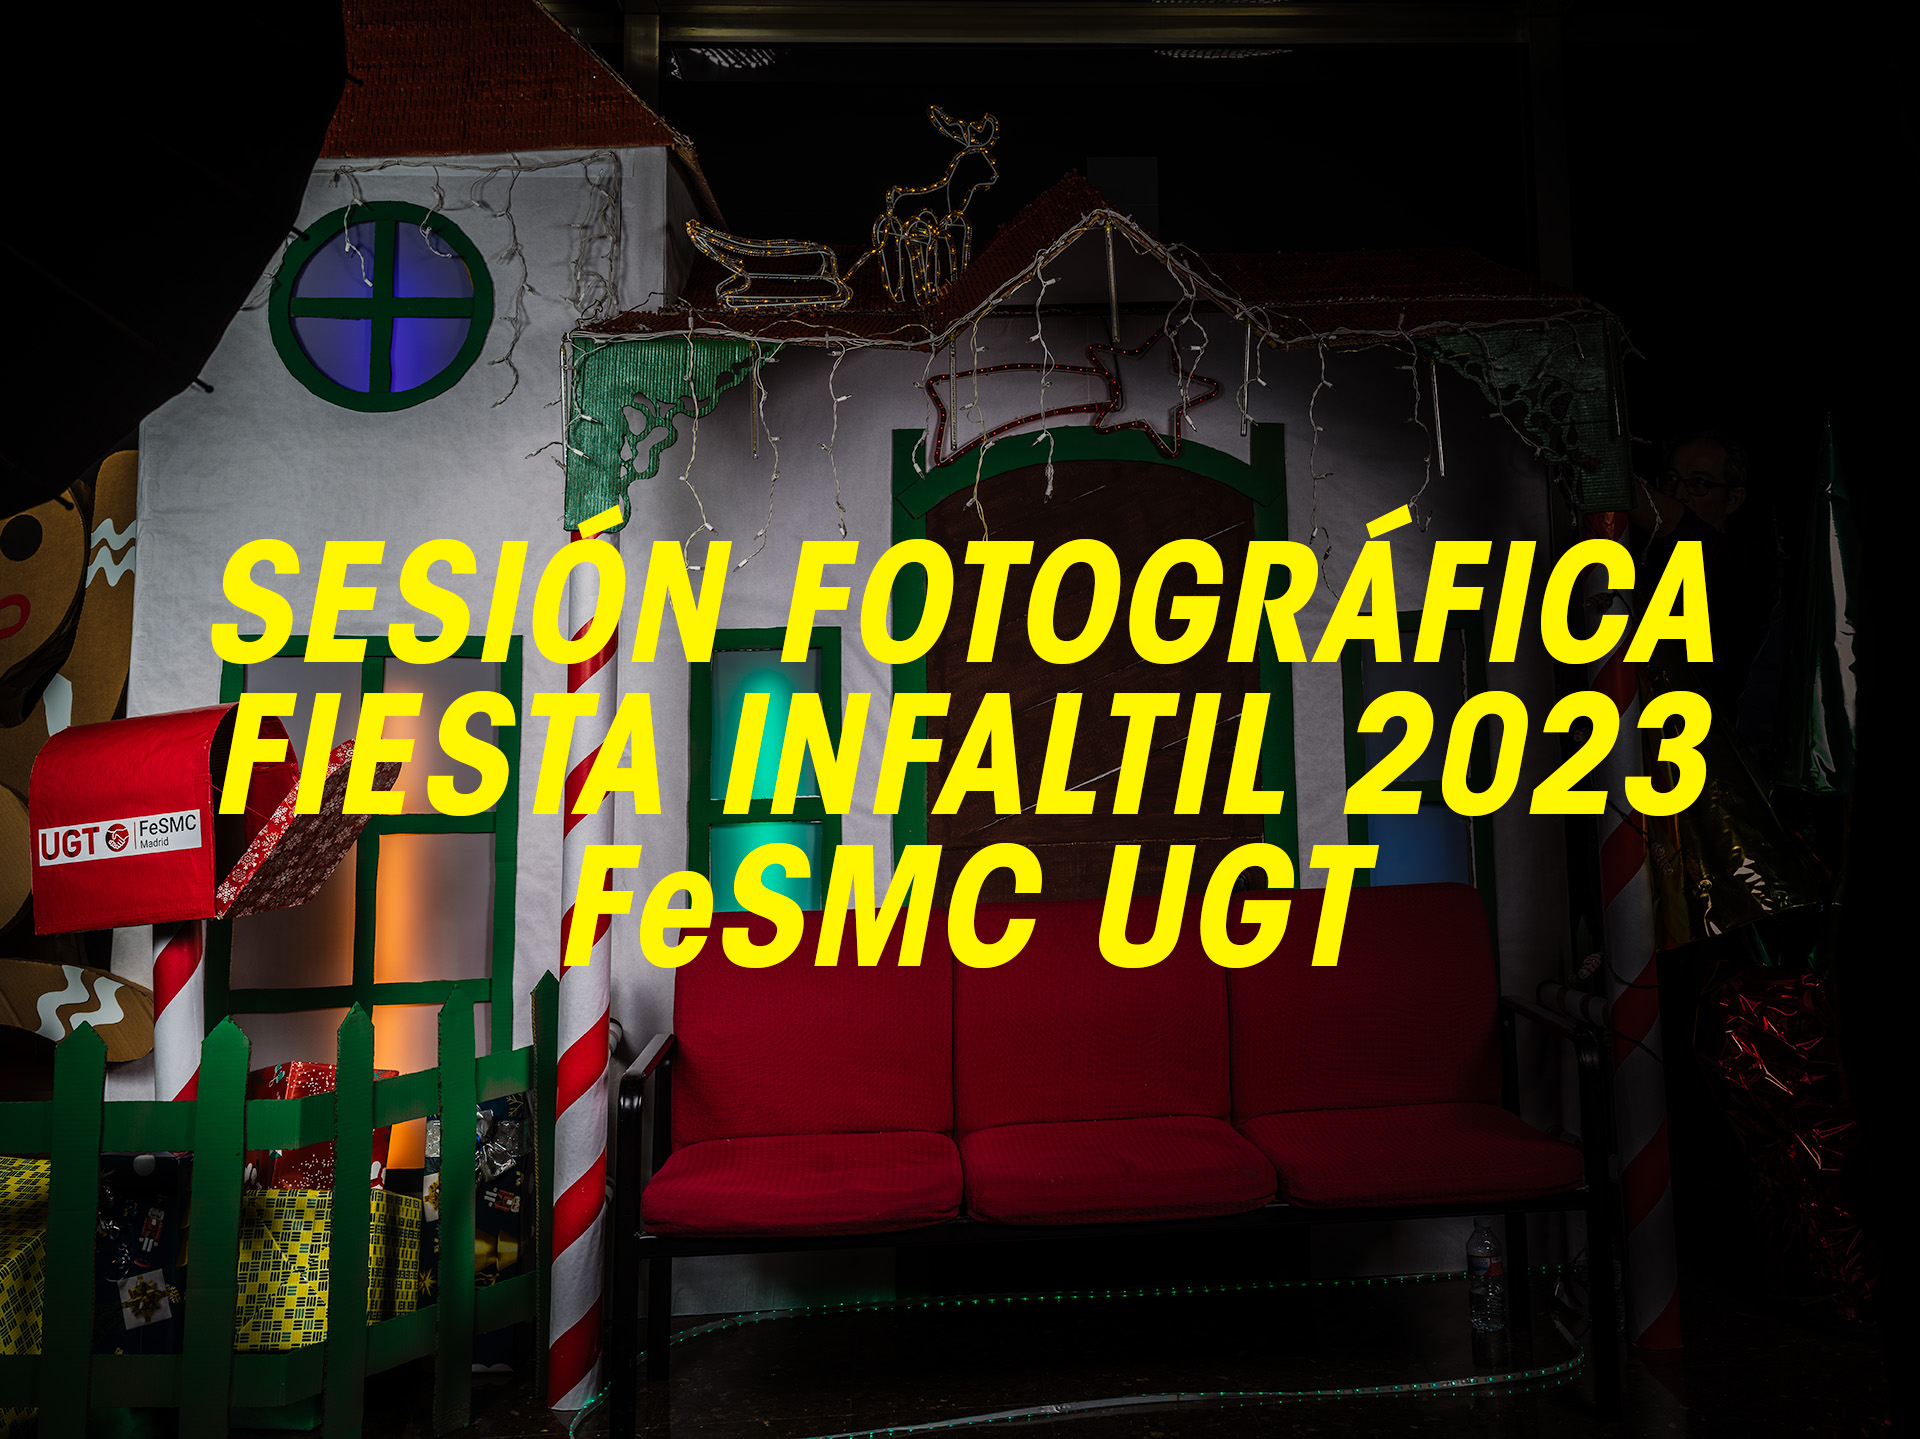 Fotos Fiesta Infantil FeSMC UGT 2023